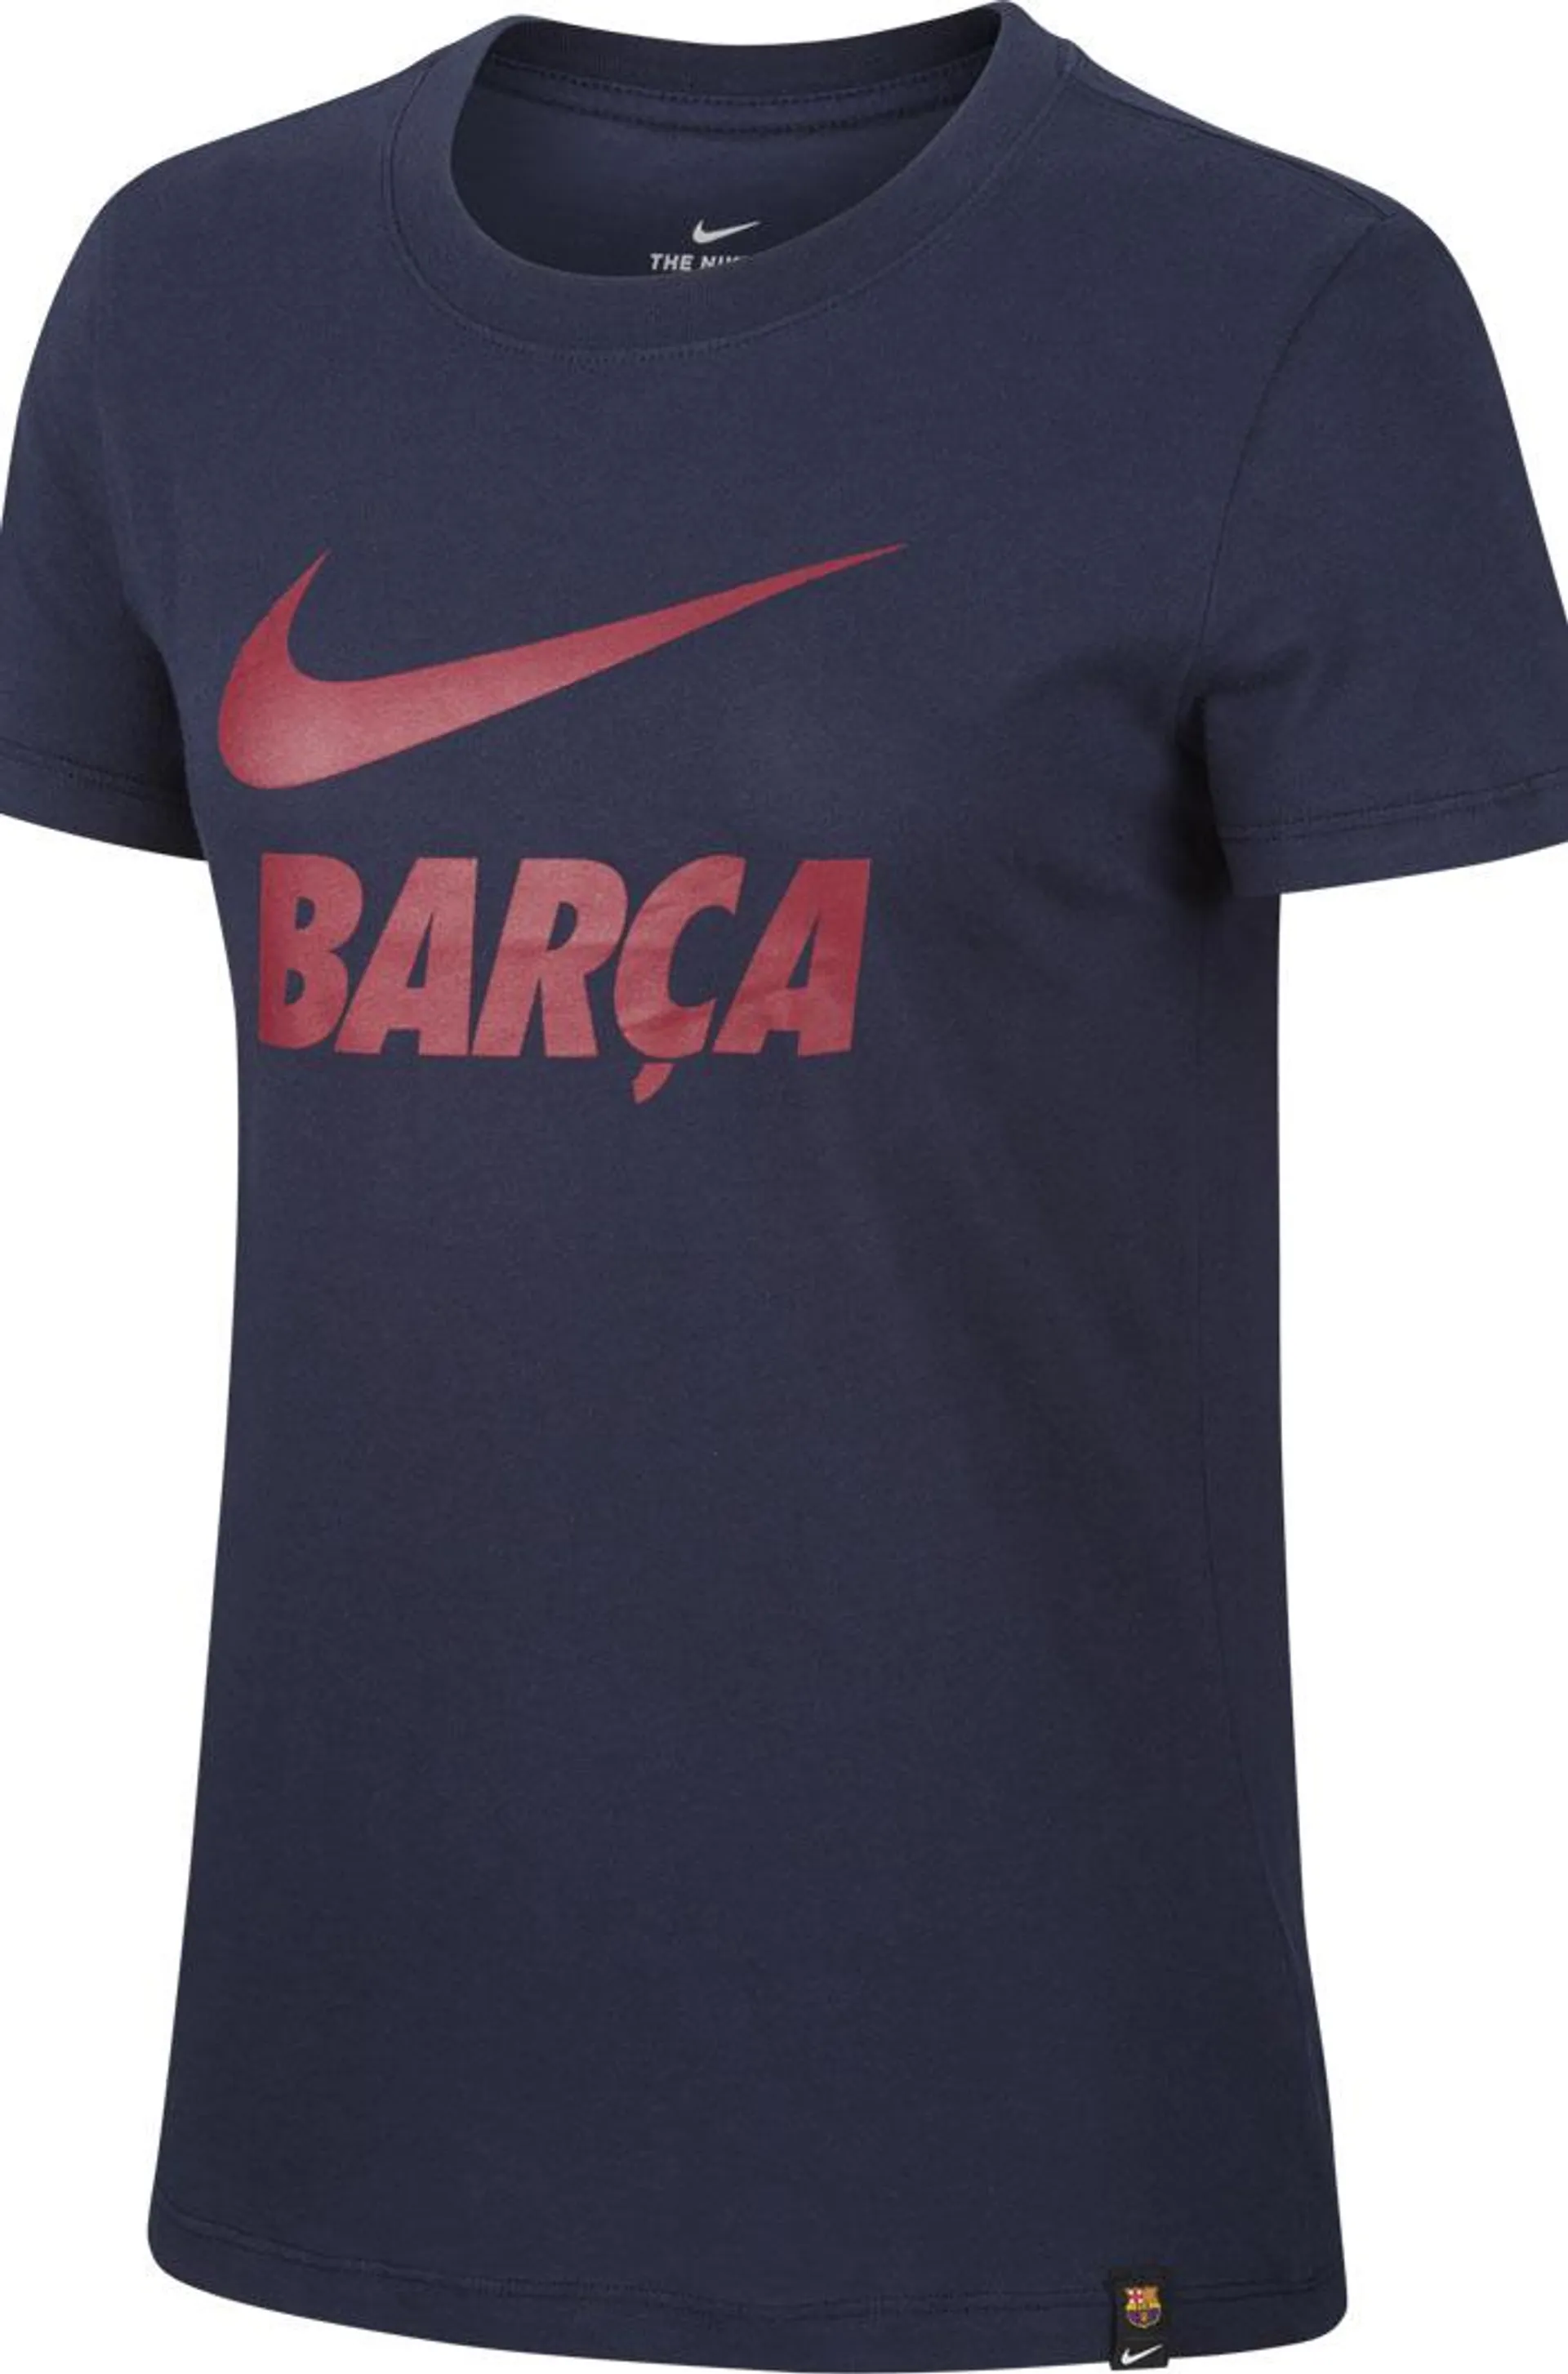 Camiseta “Barça” - Marino